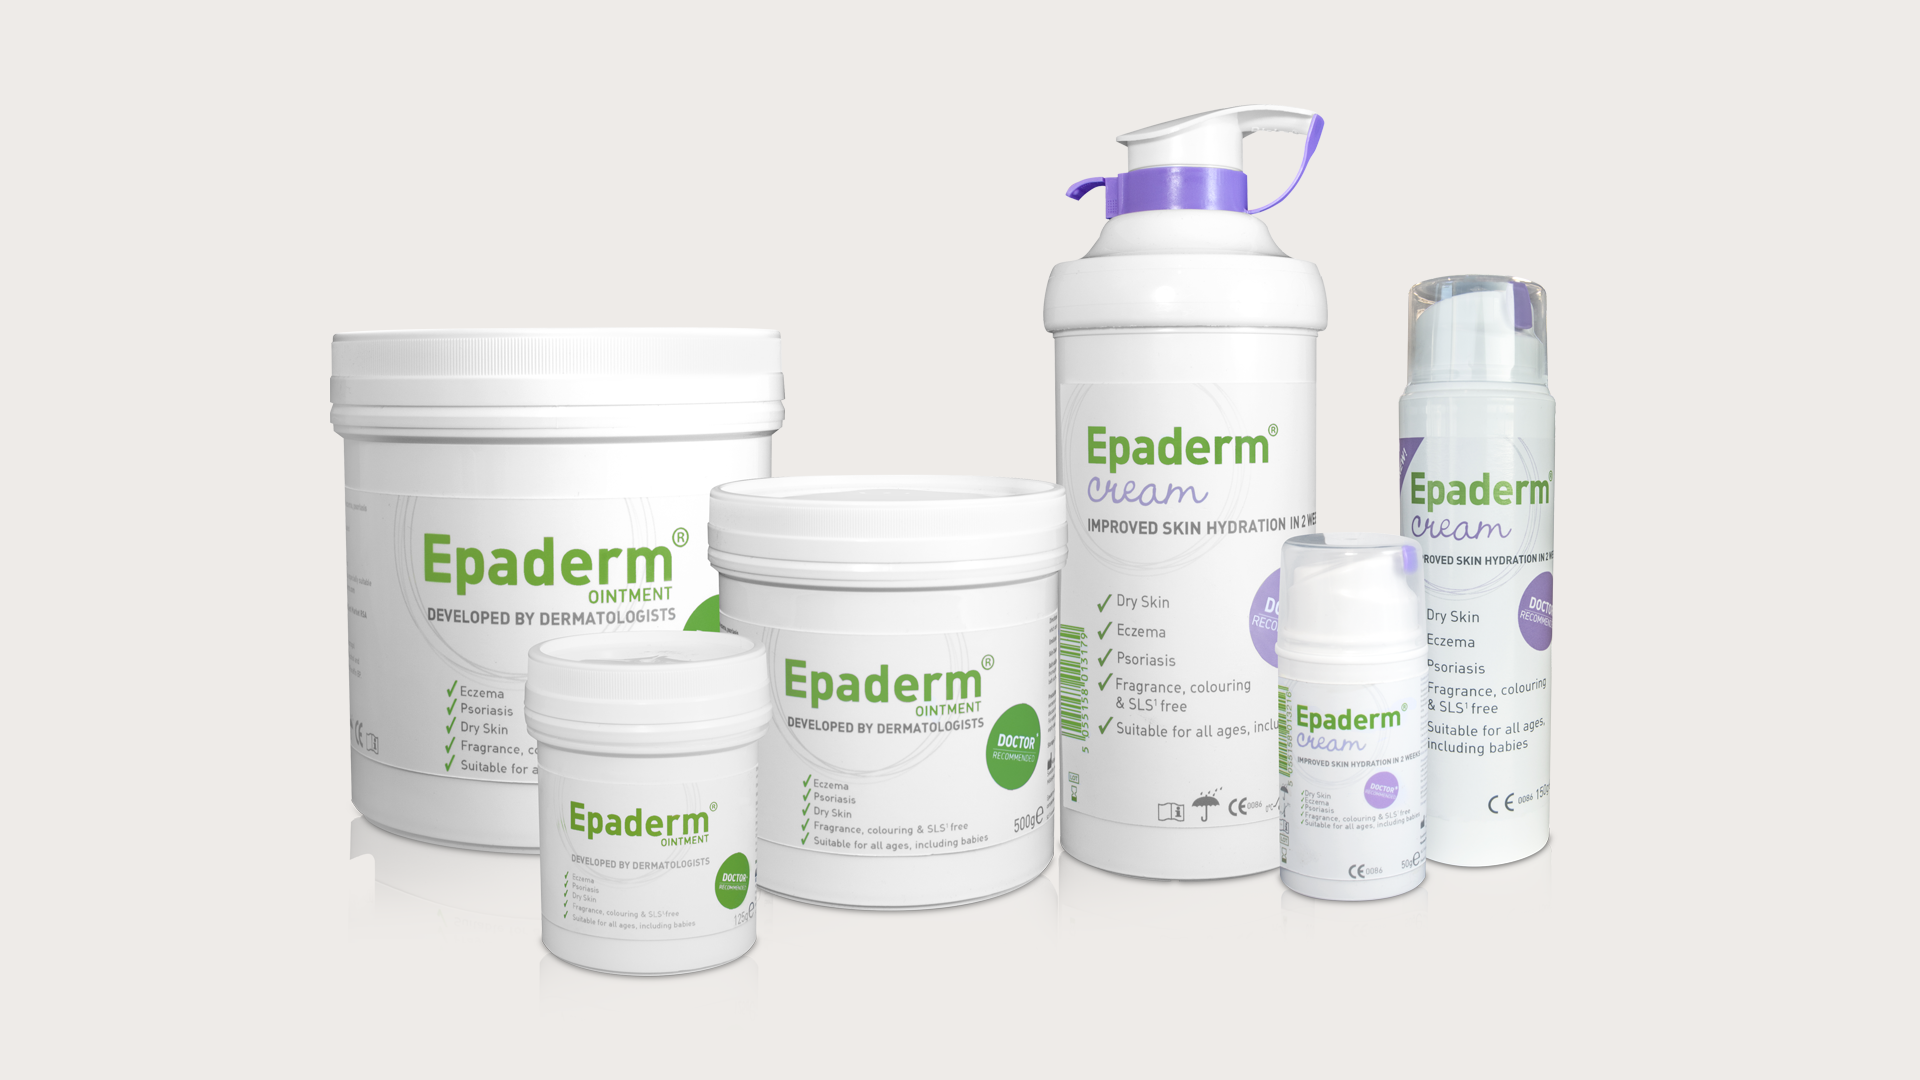 Epaderm product range